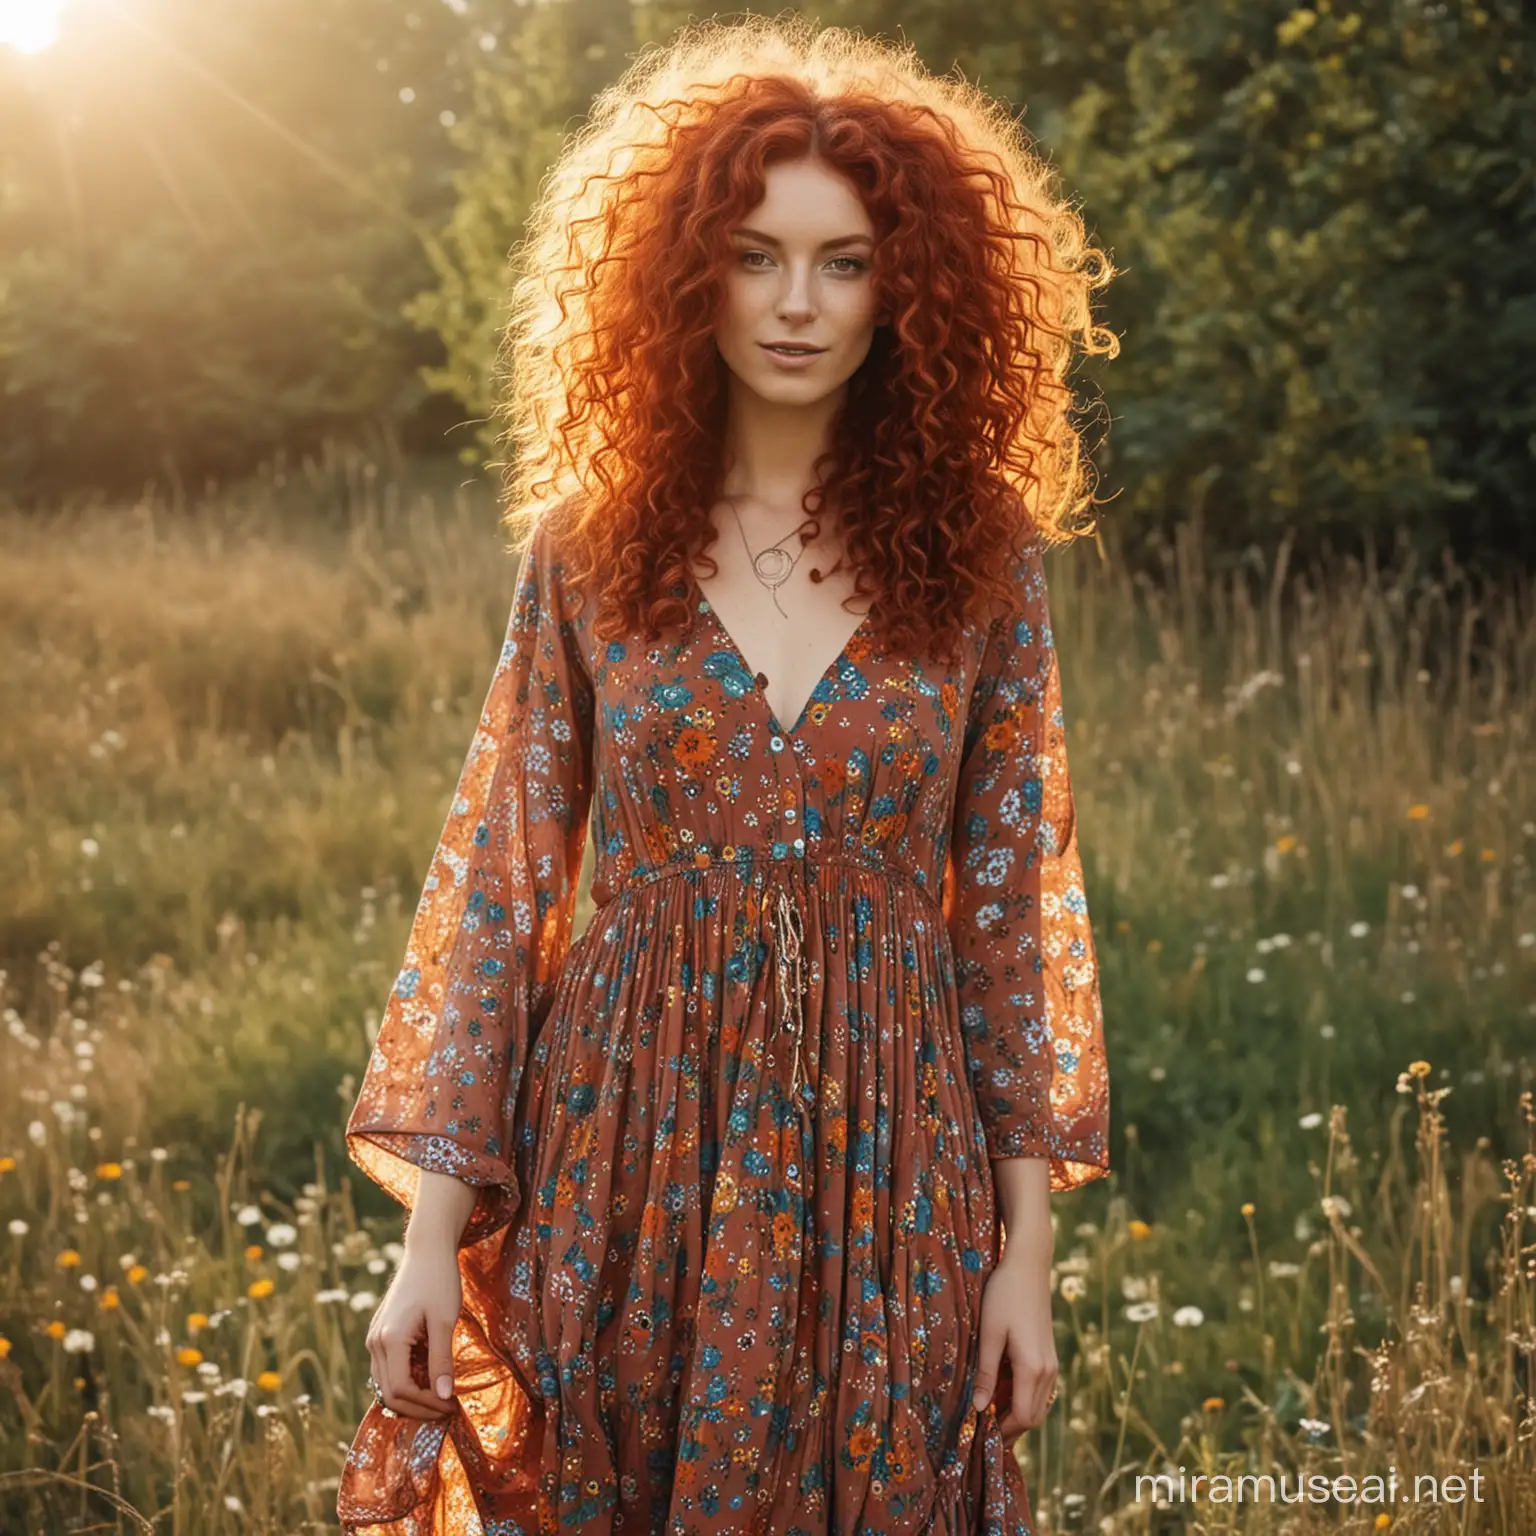 hippie style woman red hair curly ganzer körper kleid